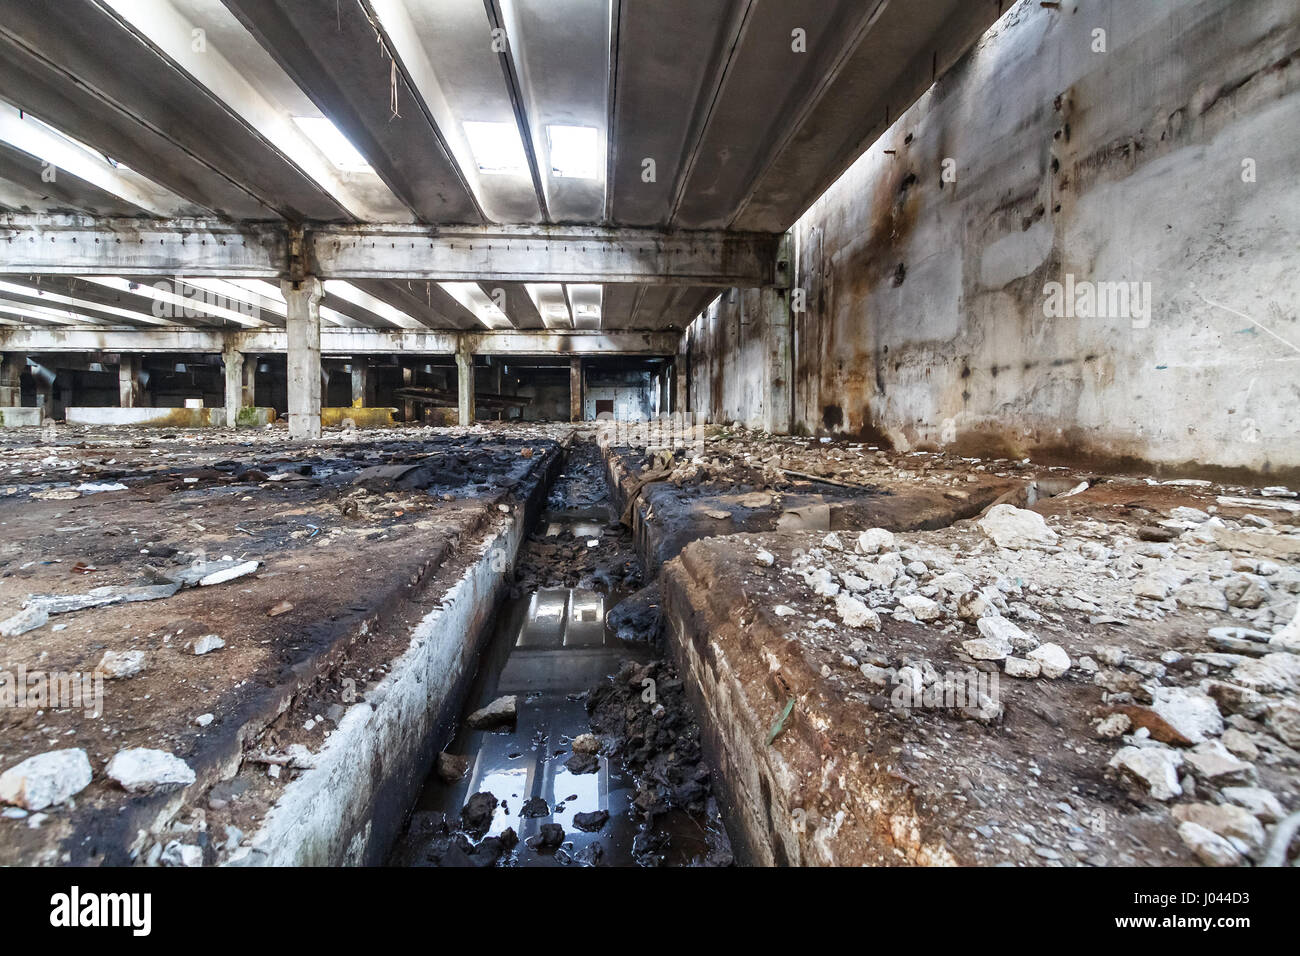 Intérieur de l'ancienne usine bâtiments détruits. Ruines de l'entreprise industrielle à l'abandon. L'espace vide. Banque D'Images